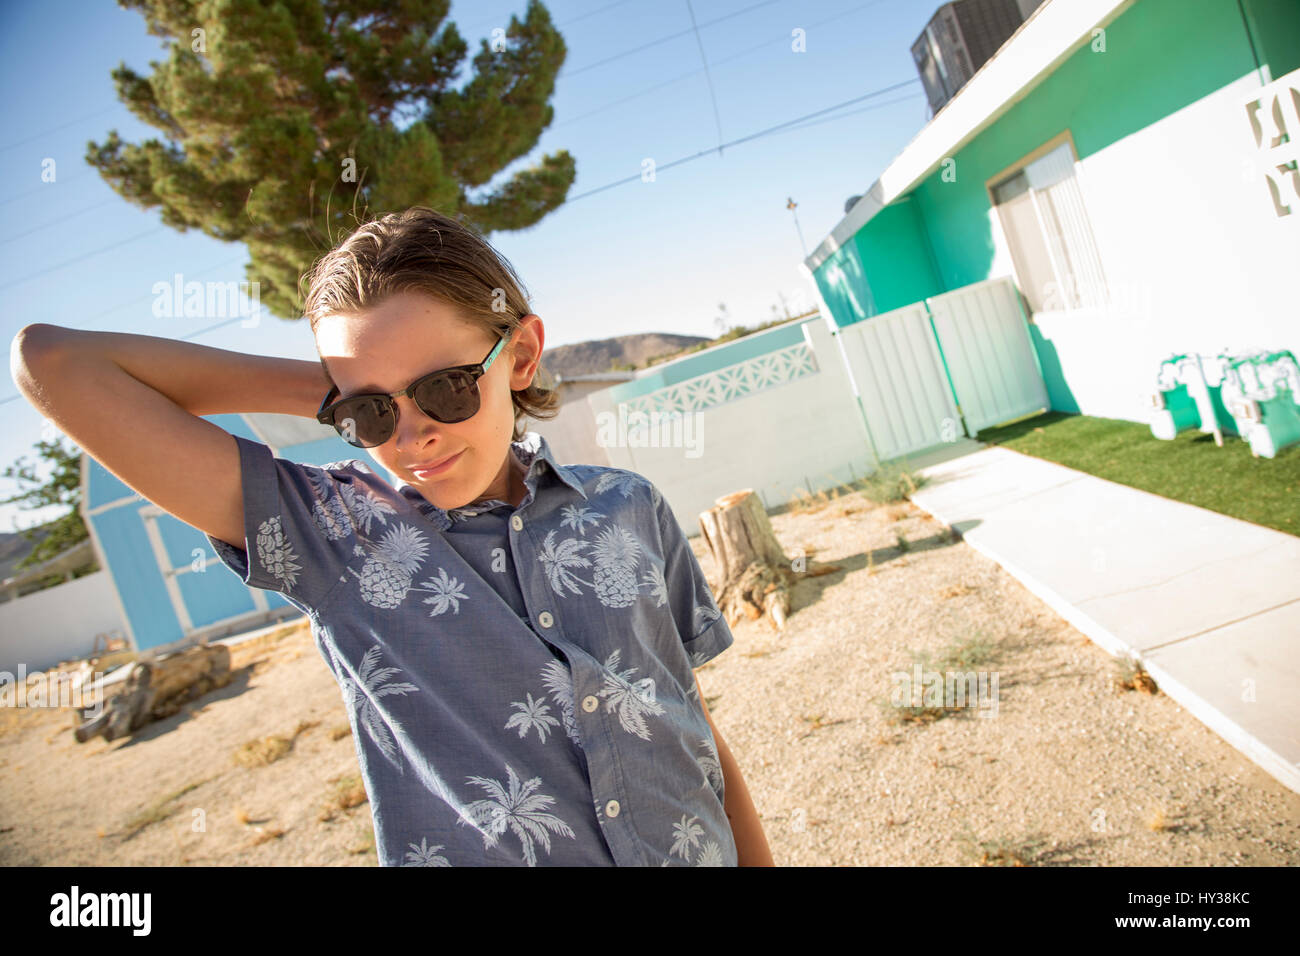 USA, California, junge (14-15) tragen Sonnenbrillen stehen außerhalb Haus Stockfoto